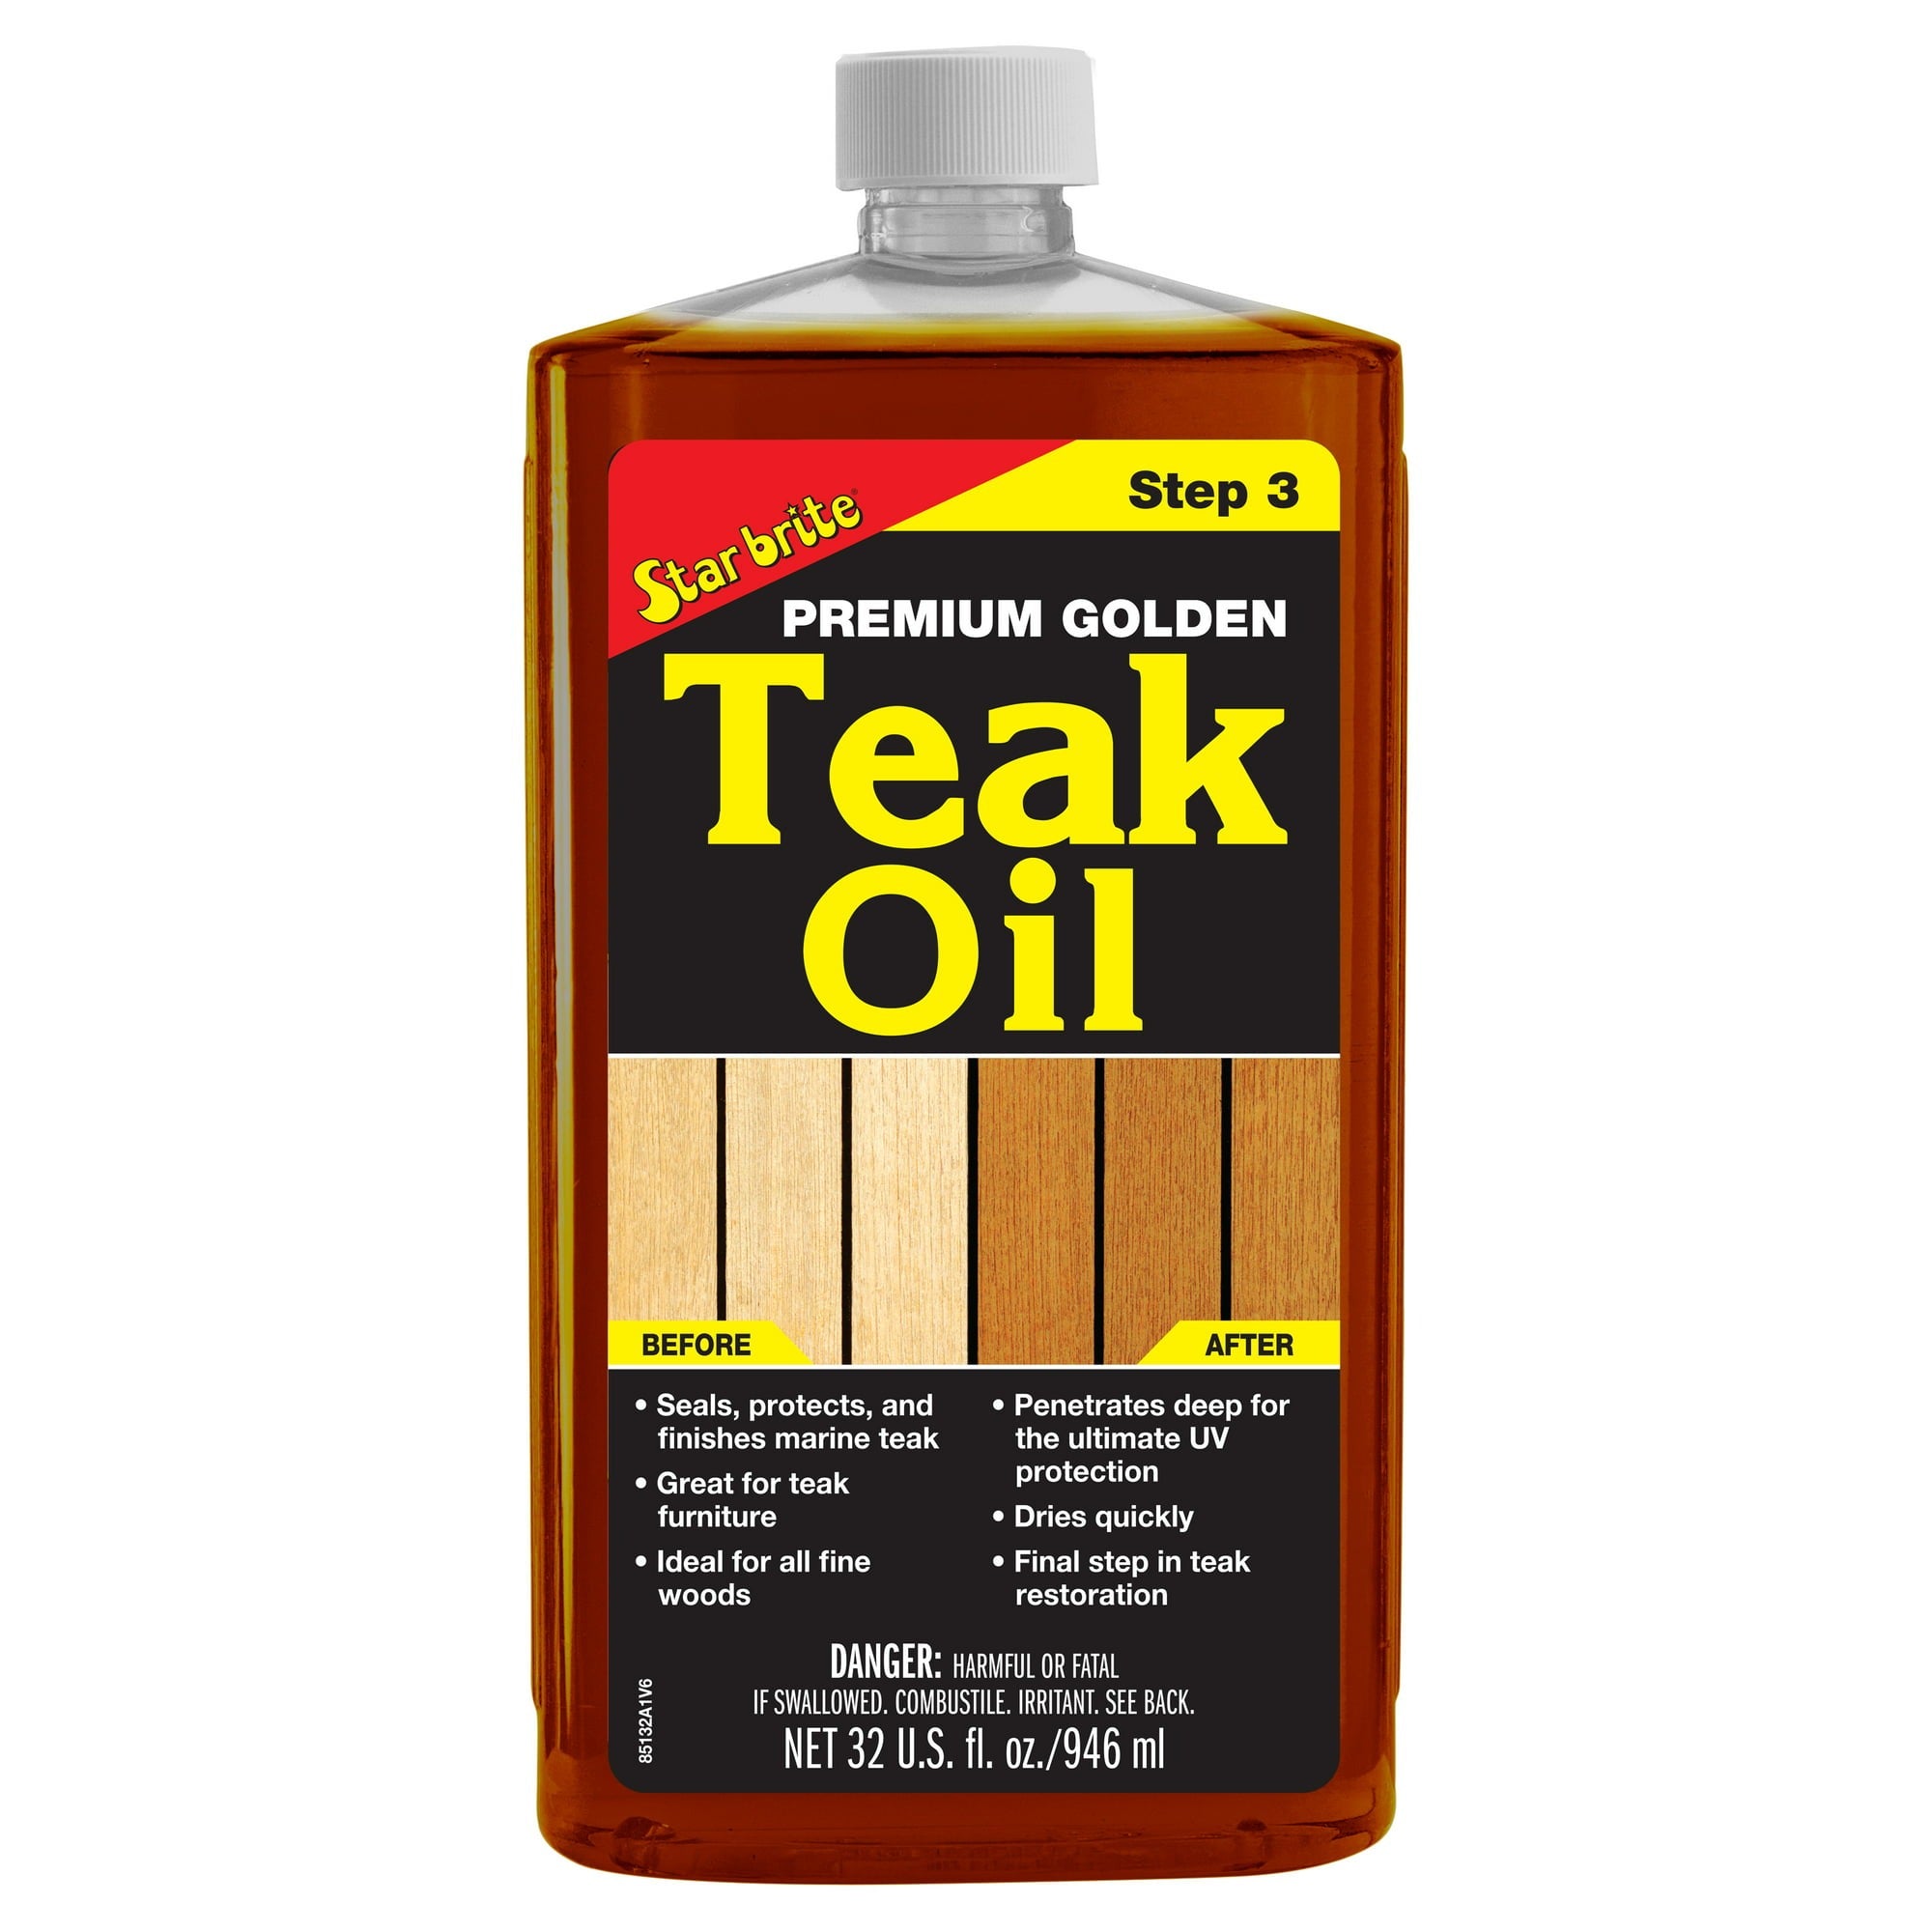 Premium Golden Teak Oil -Step 3 85132